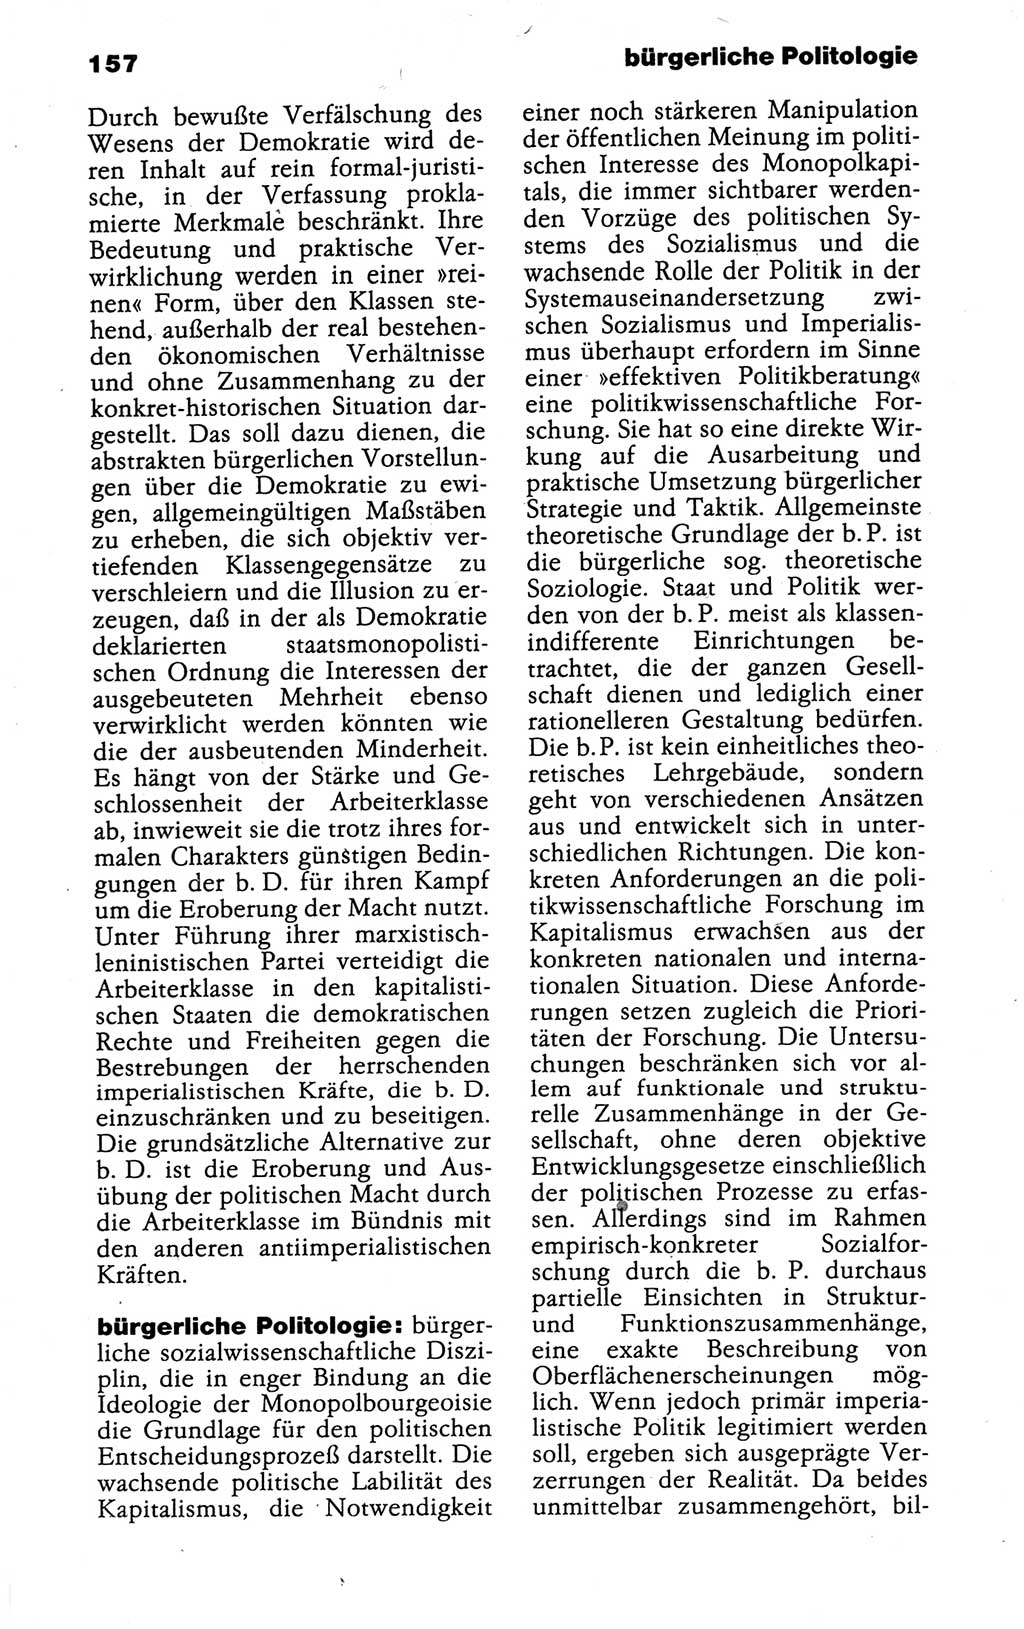 Kleines politisches Wörterbuch [Deutsche Demokratische Republik (DDR)] 1988, Seite 157 (Kl. pol. Wb. DDR 1988, S. 157)